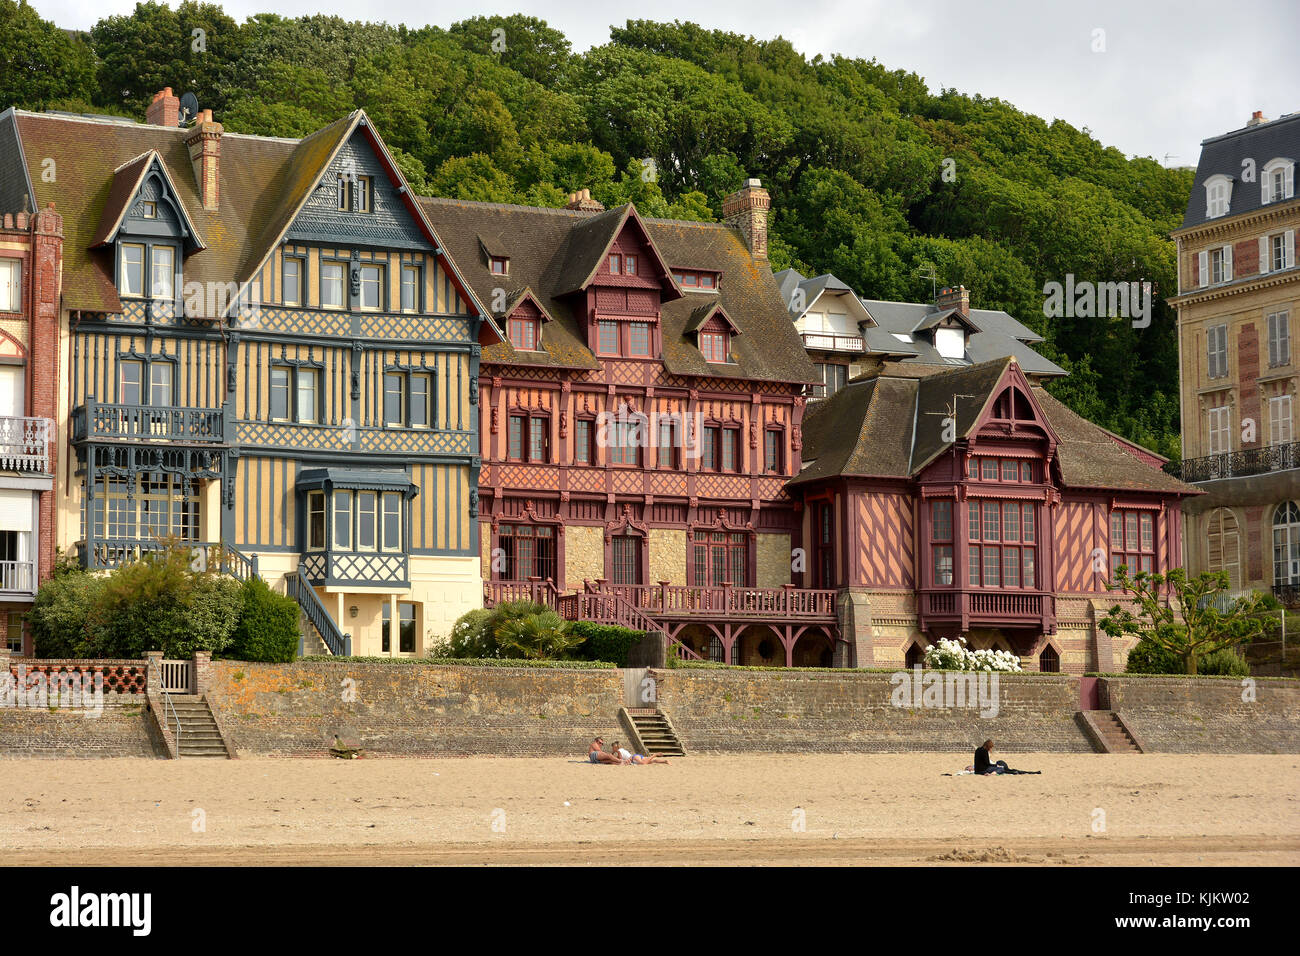 Häuser aus dem 19. Jahrhundert in Trouville-sur-Mer. Frankreich. Stockfoto